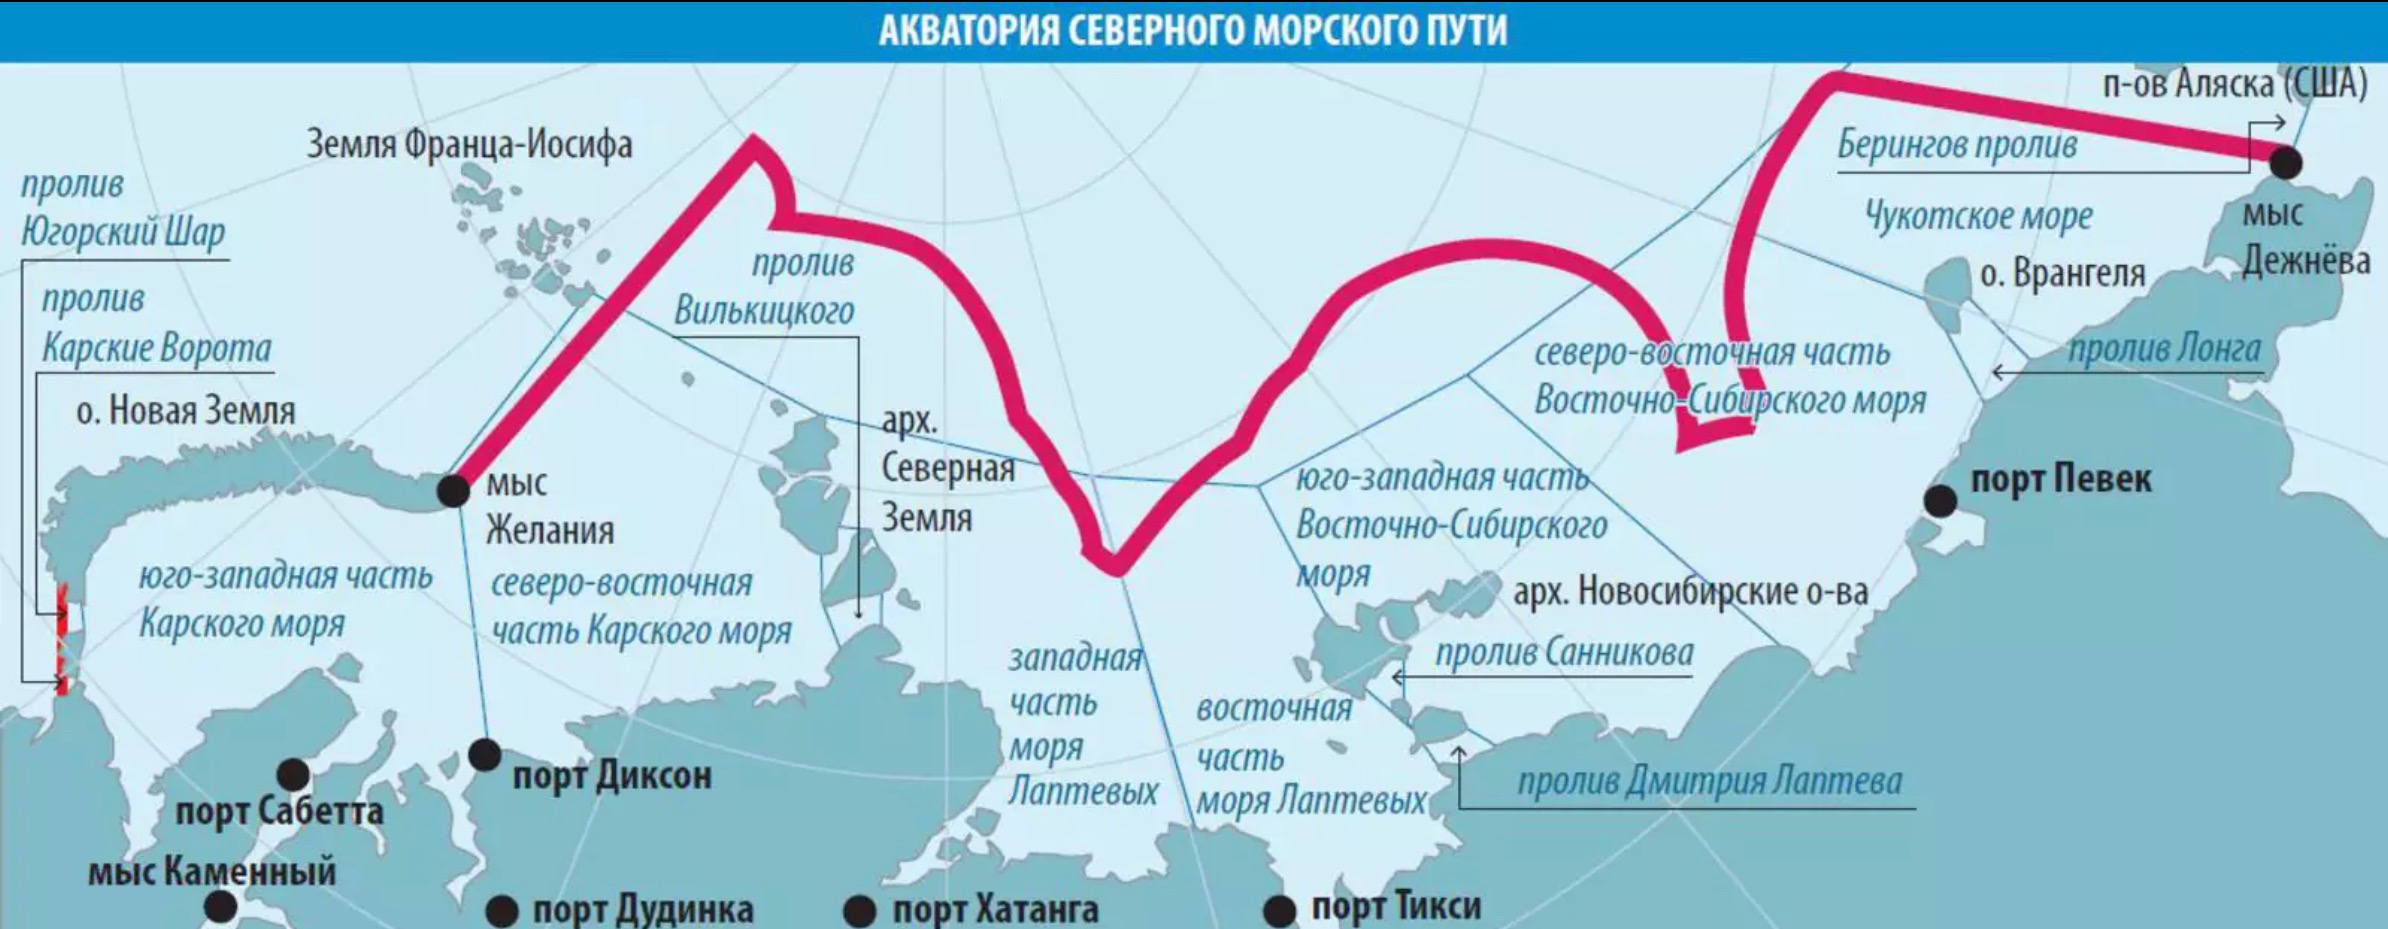 Главные порты морей россии